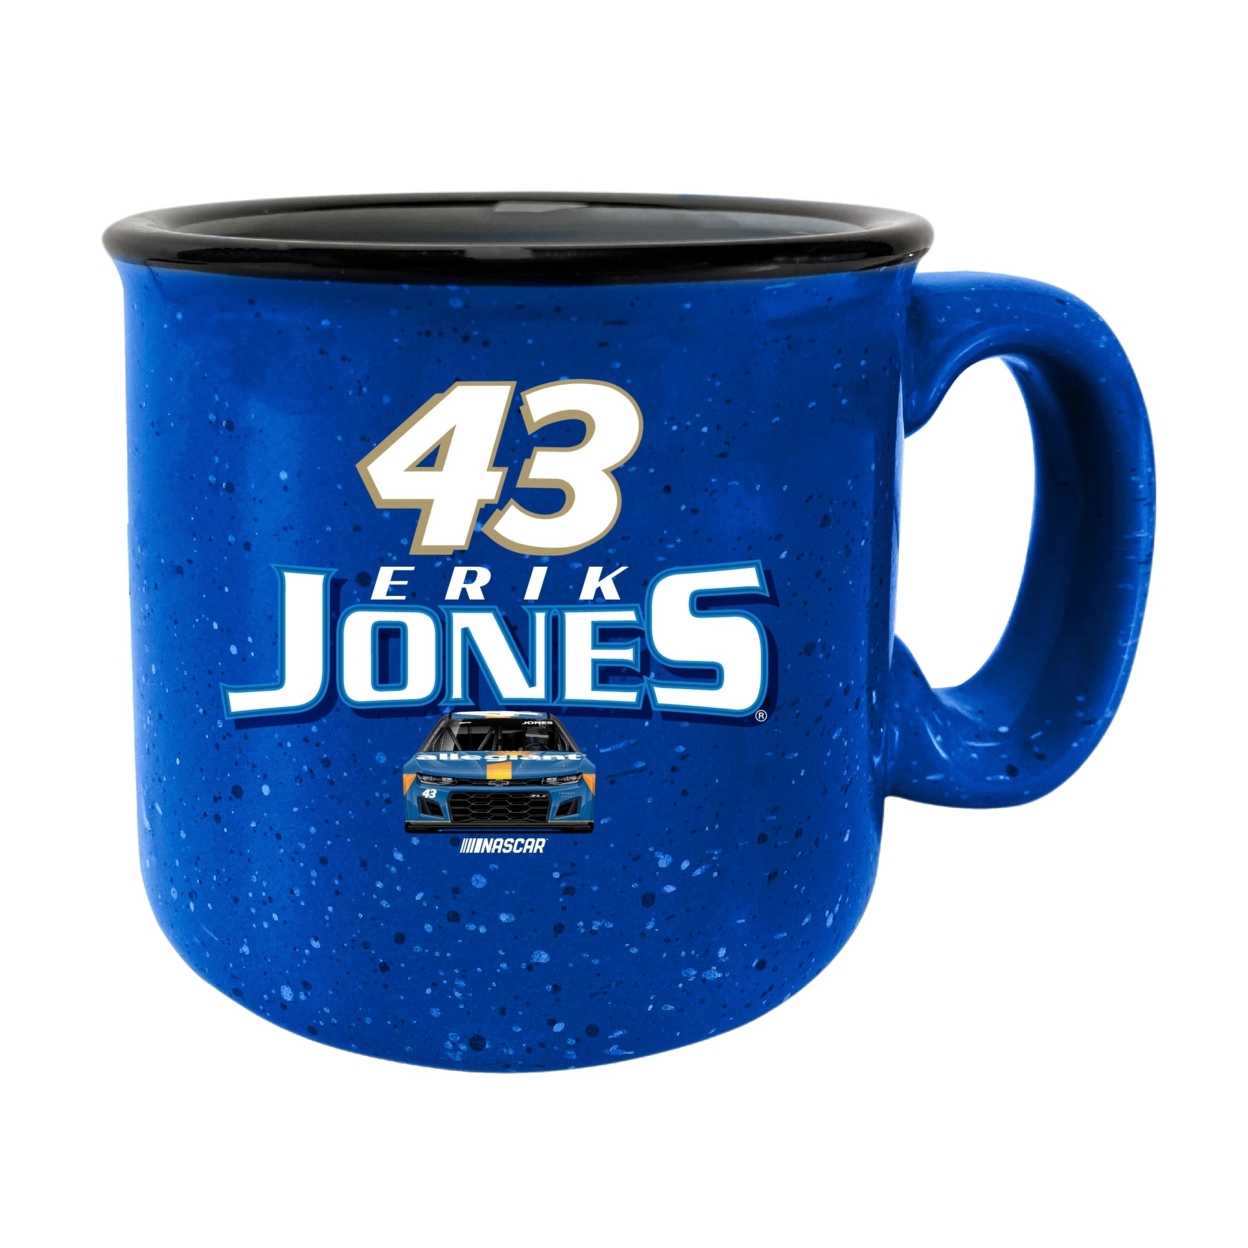 #43 Erik Jones Officially Licensed Ceramic Camper Mug 16oz - Blue